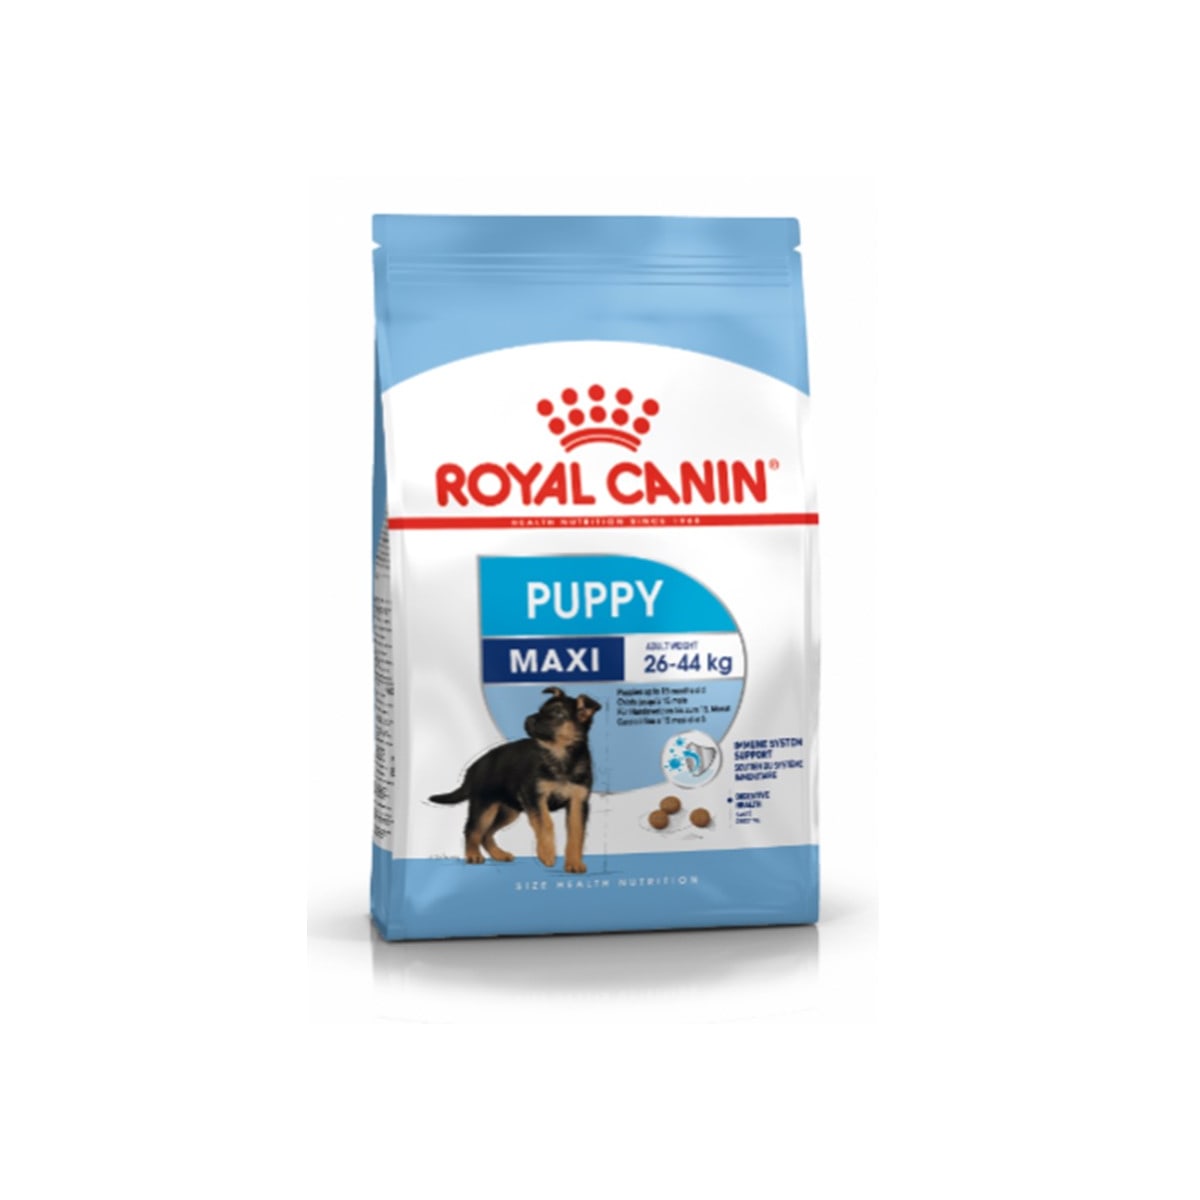 Royal Canin โรยัล คานิน อาหารสุนัขแบบเม็ด สำหรับลูกสุนัขสายพันธุ์ใหญ่ 